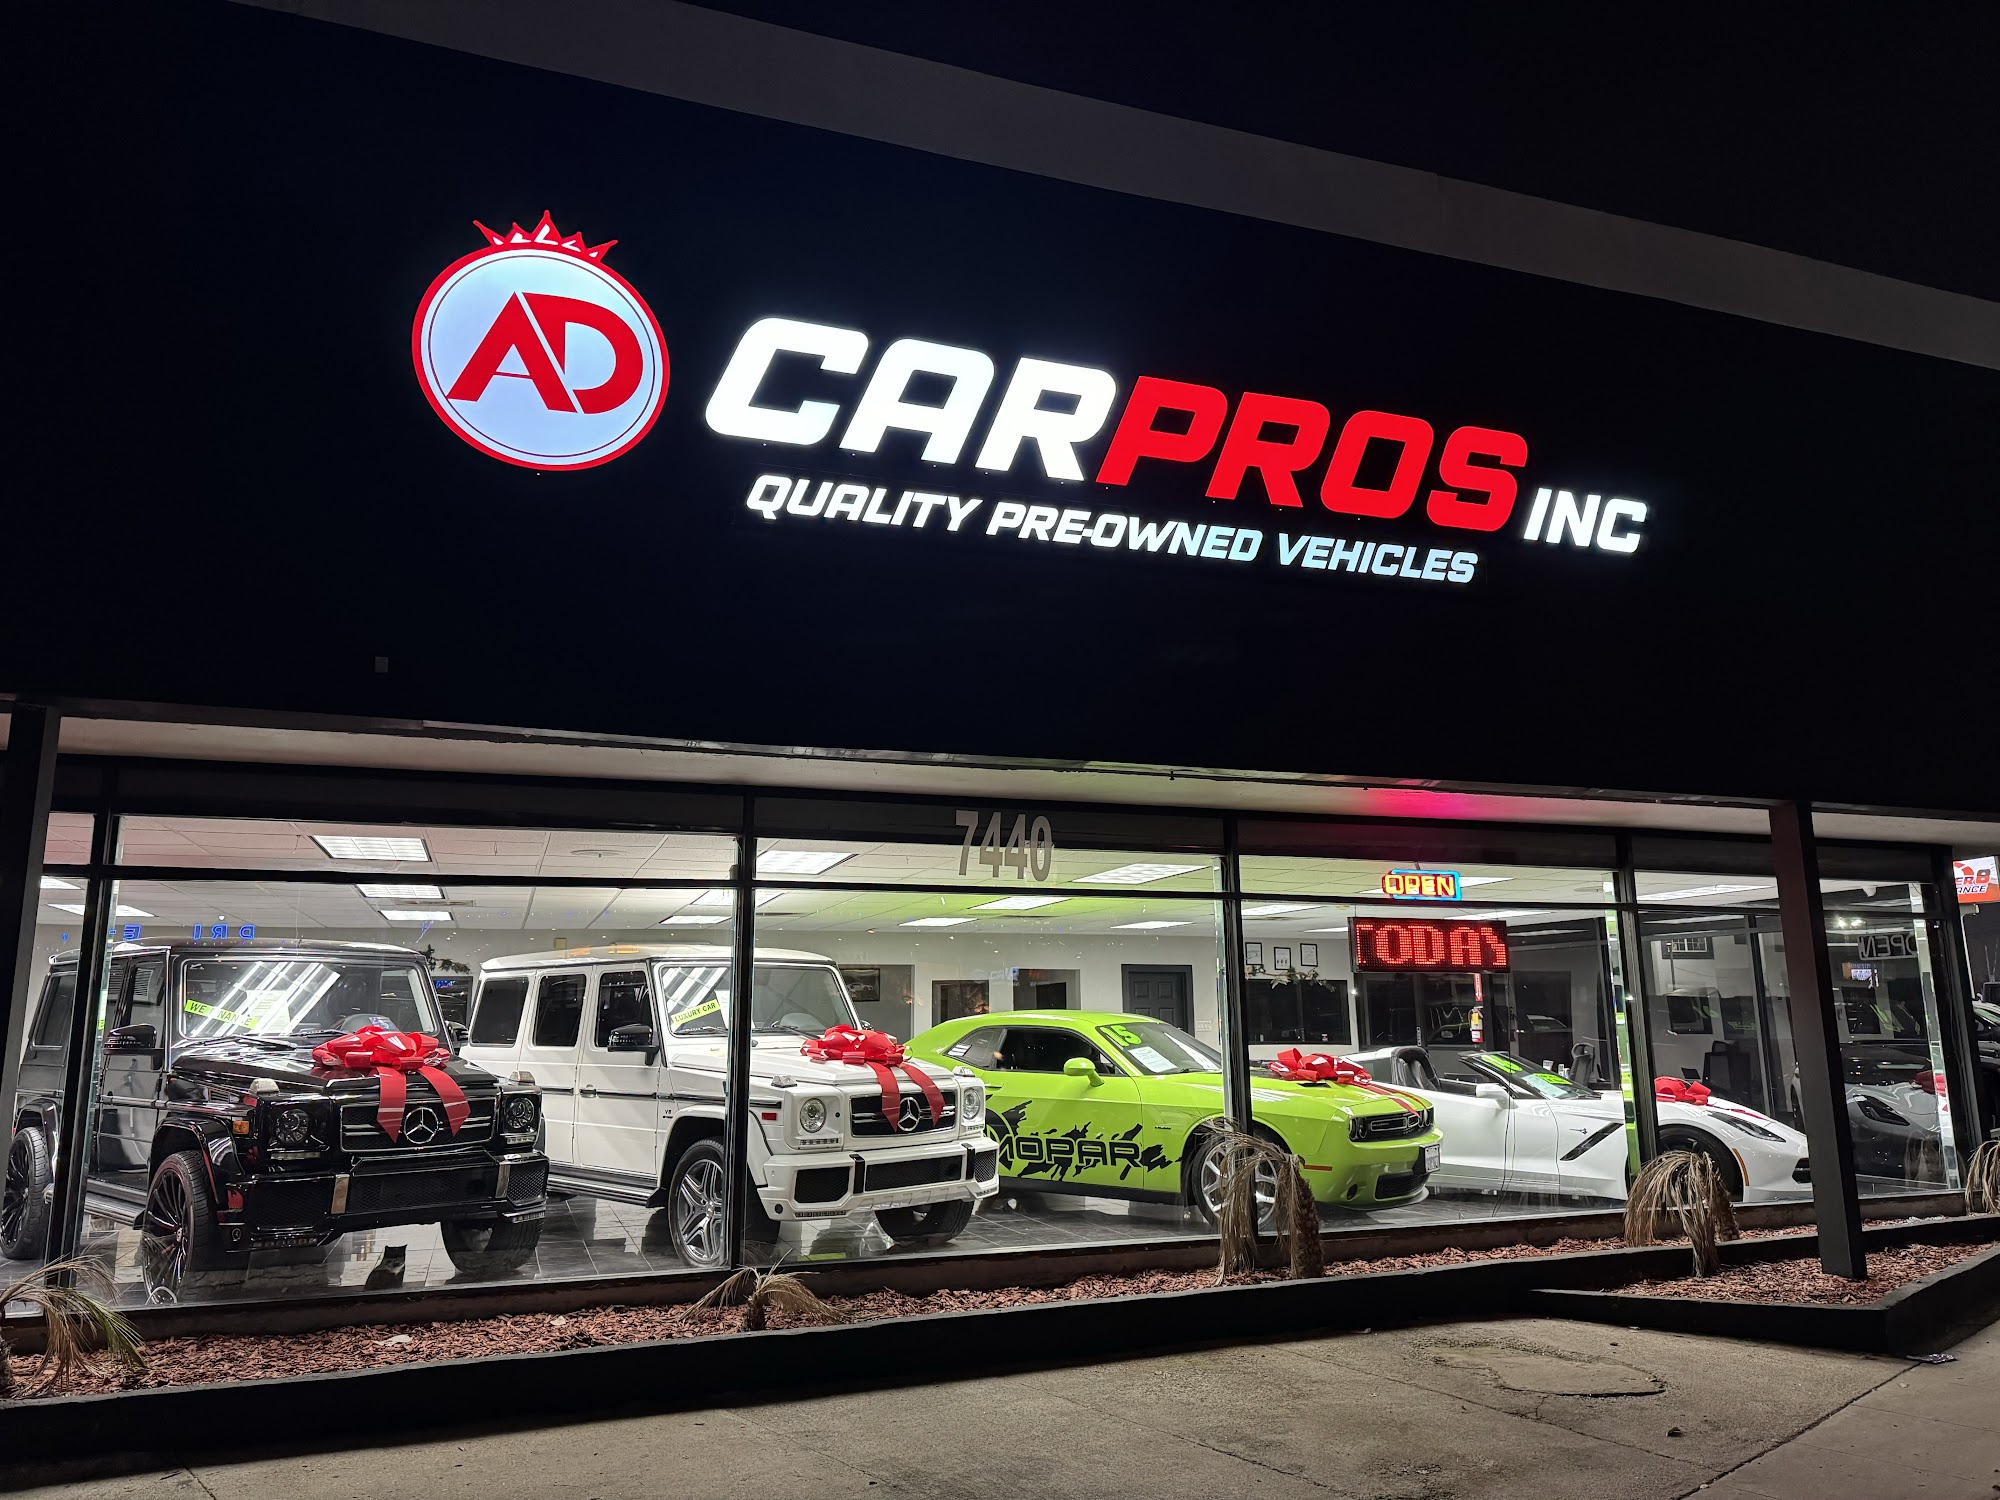 AD CarPros Inc